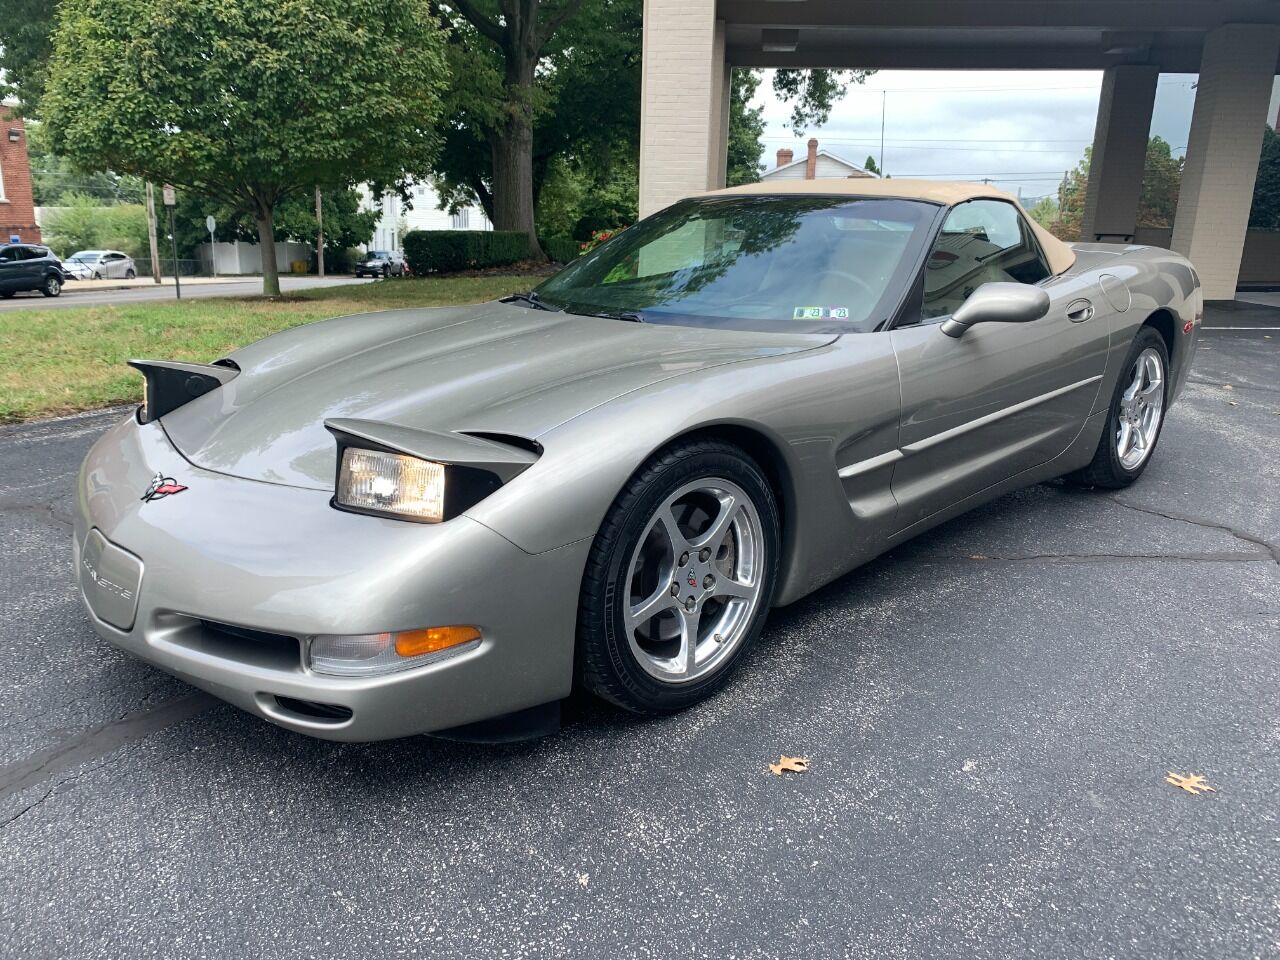 2001 Chevrolet Corvette For Sale - Carsforsale.com®